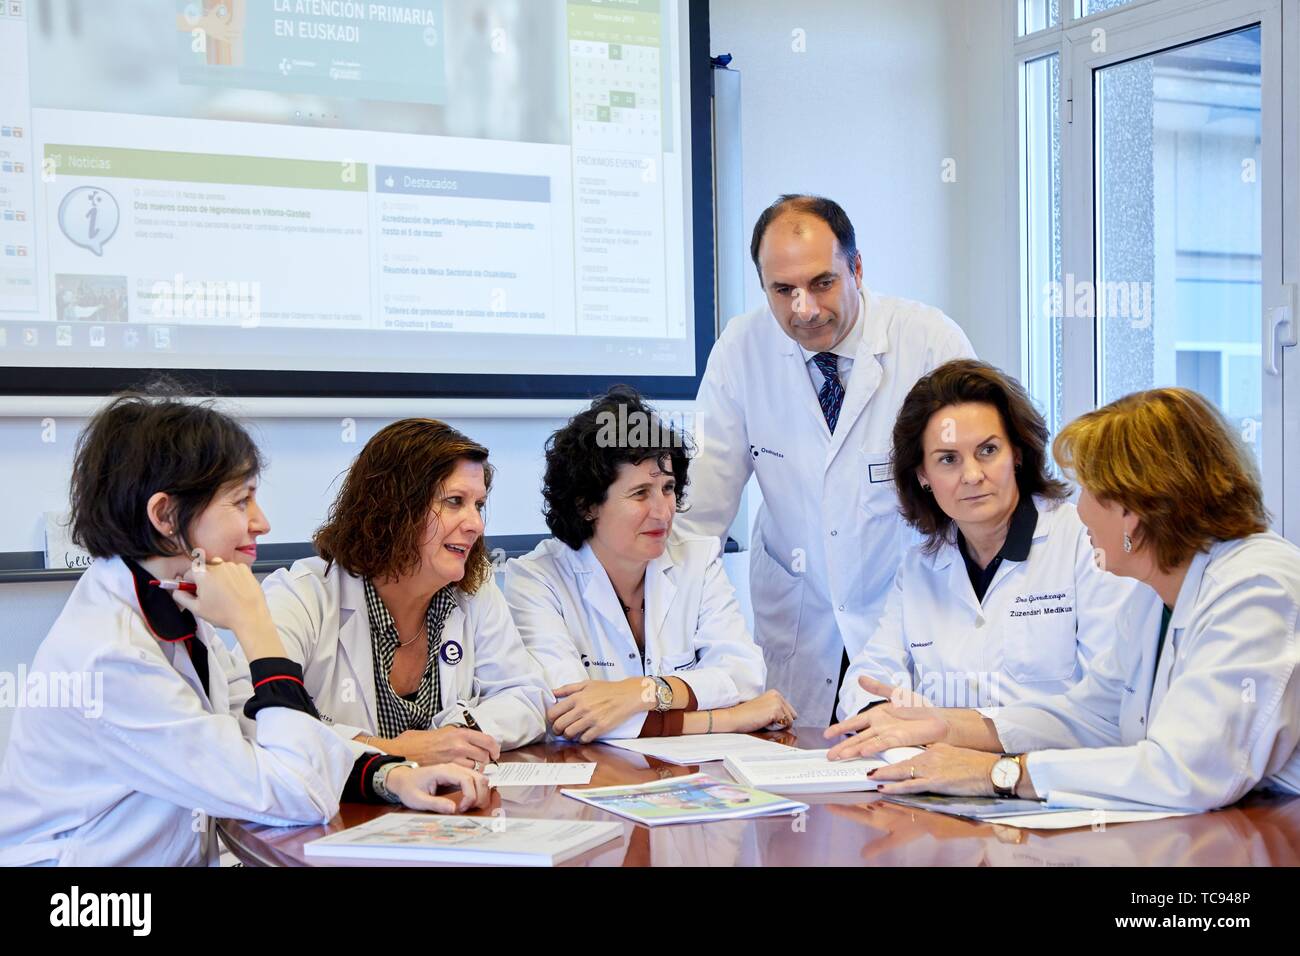 Reunión de gestión hospitalaria, Sesión Clínica, Hospital Donostia, San Sebastián, Gipuzkoa, País Vasco, España Foto de stock